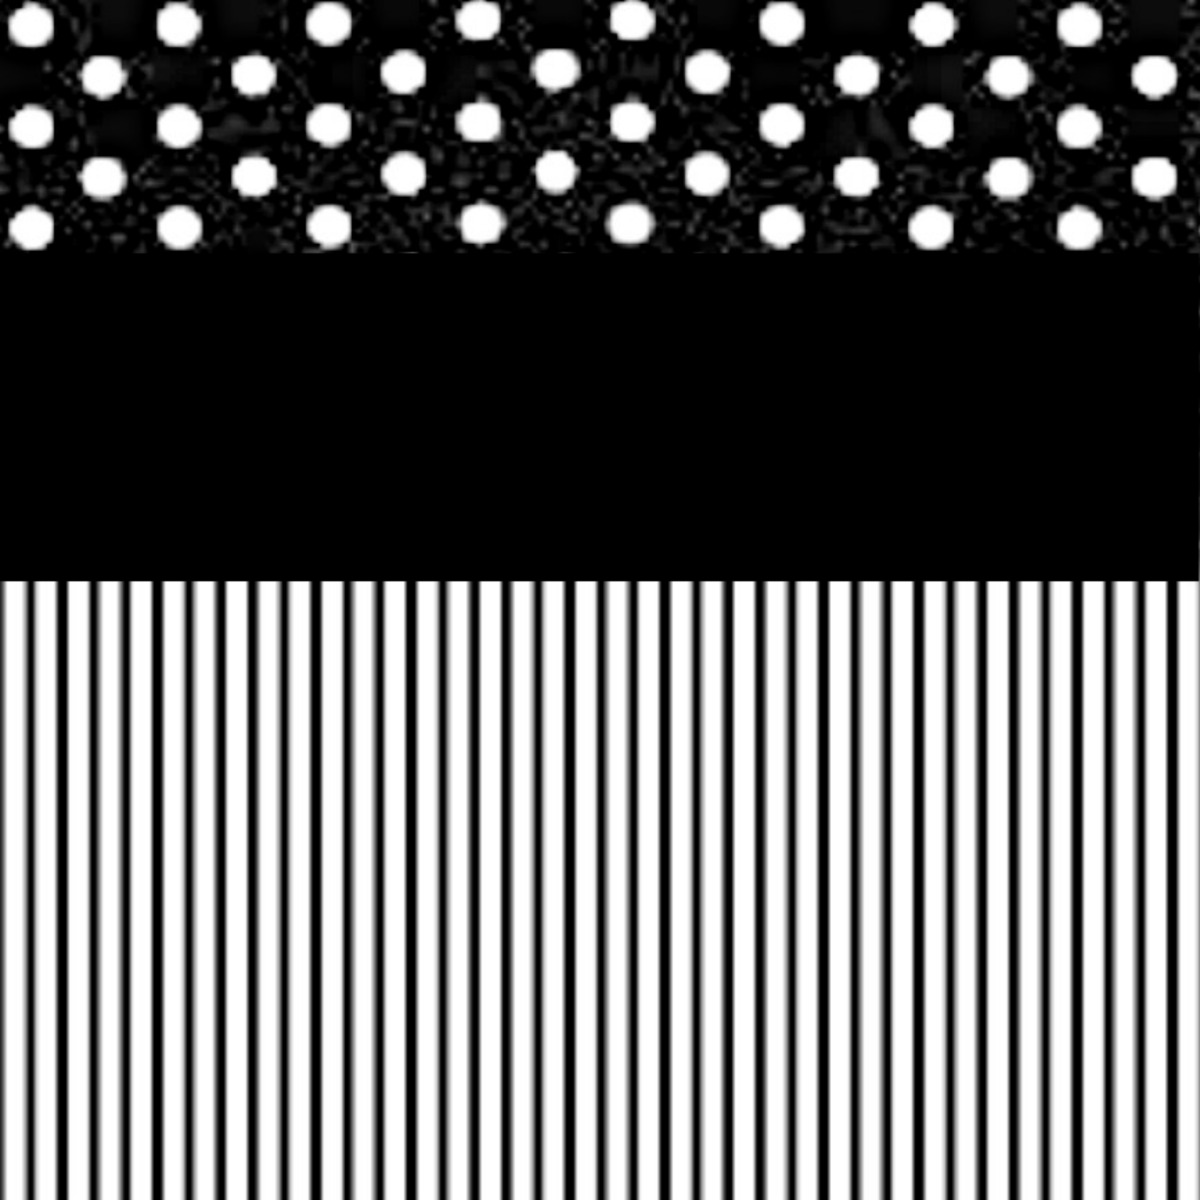 Black & White Polka Dots and Stripes